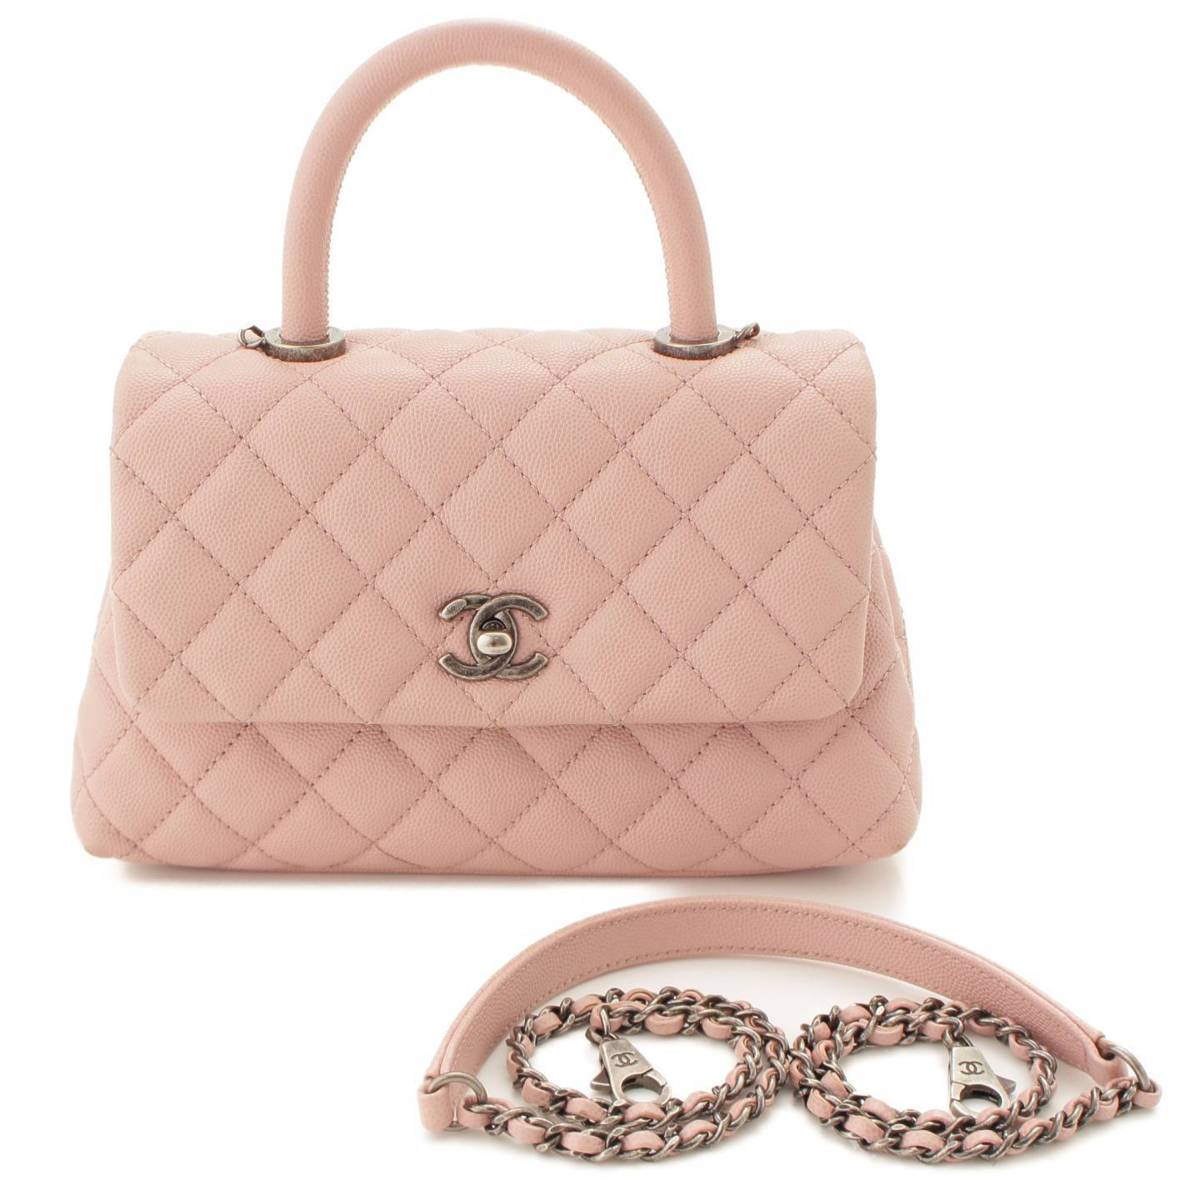 シャネル(Chanel) ココハンドル マトラッセ キャビアスキン 2WAY ショルダーバッグ A92990 ピンク